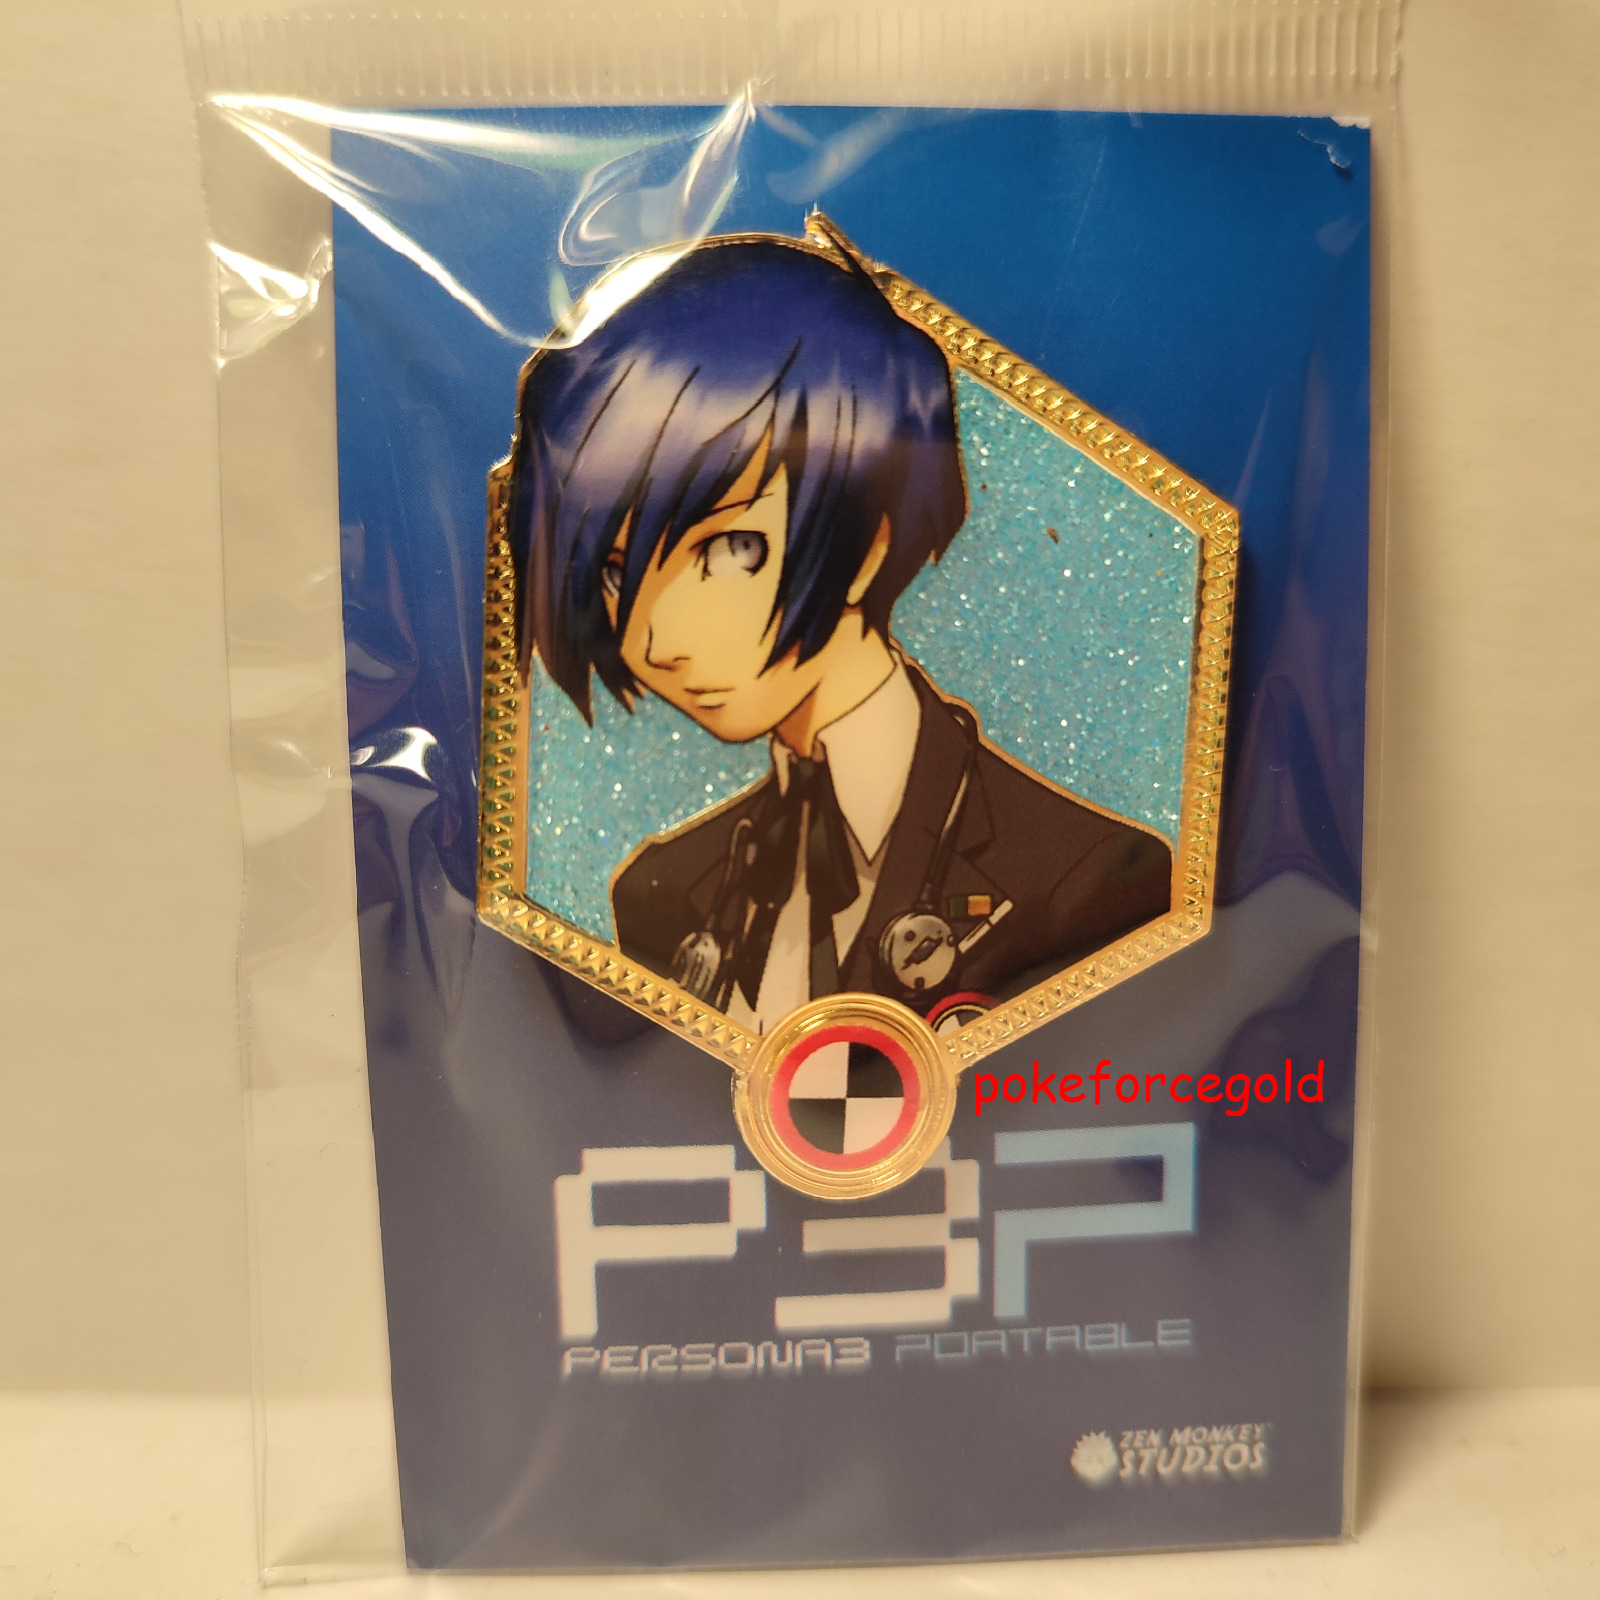 Persona 3 Portable Makoto Yuki Protagonist Enamel Pin Official Atlus Collectible